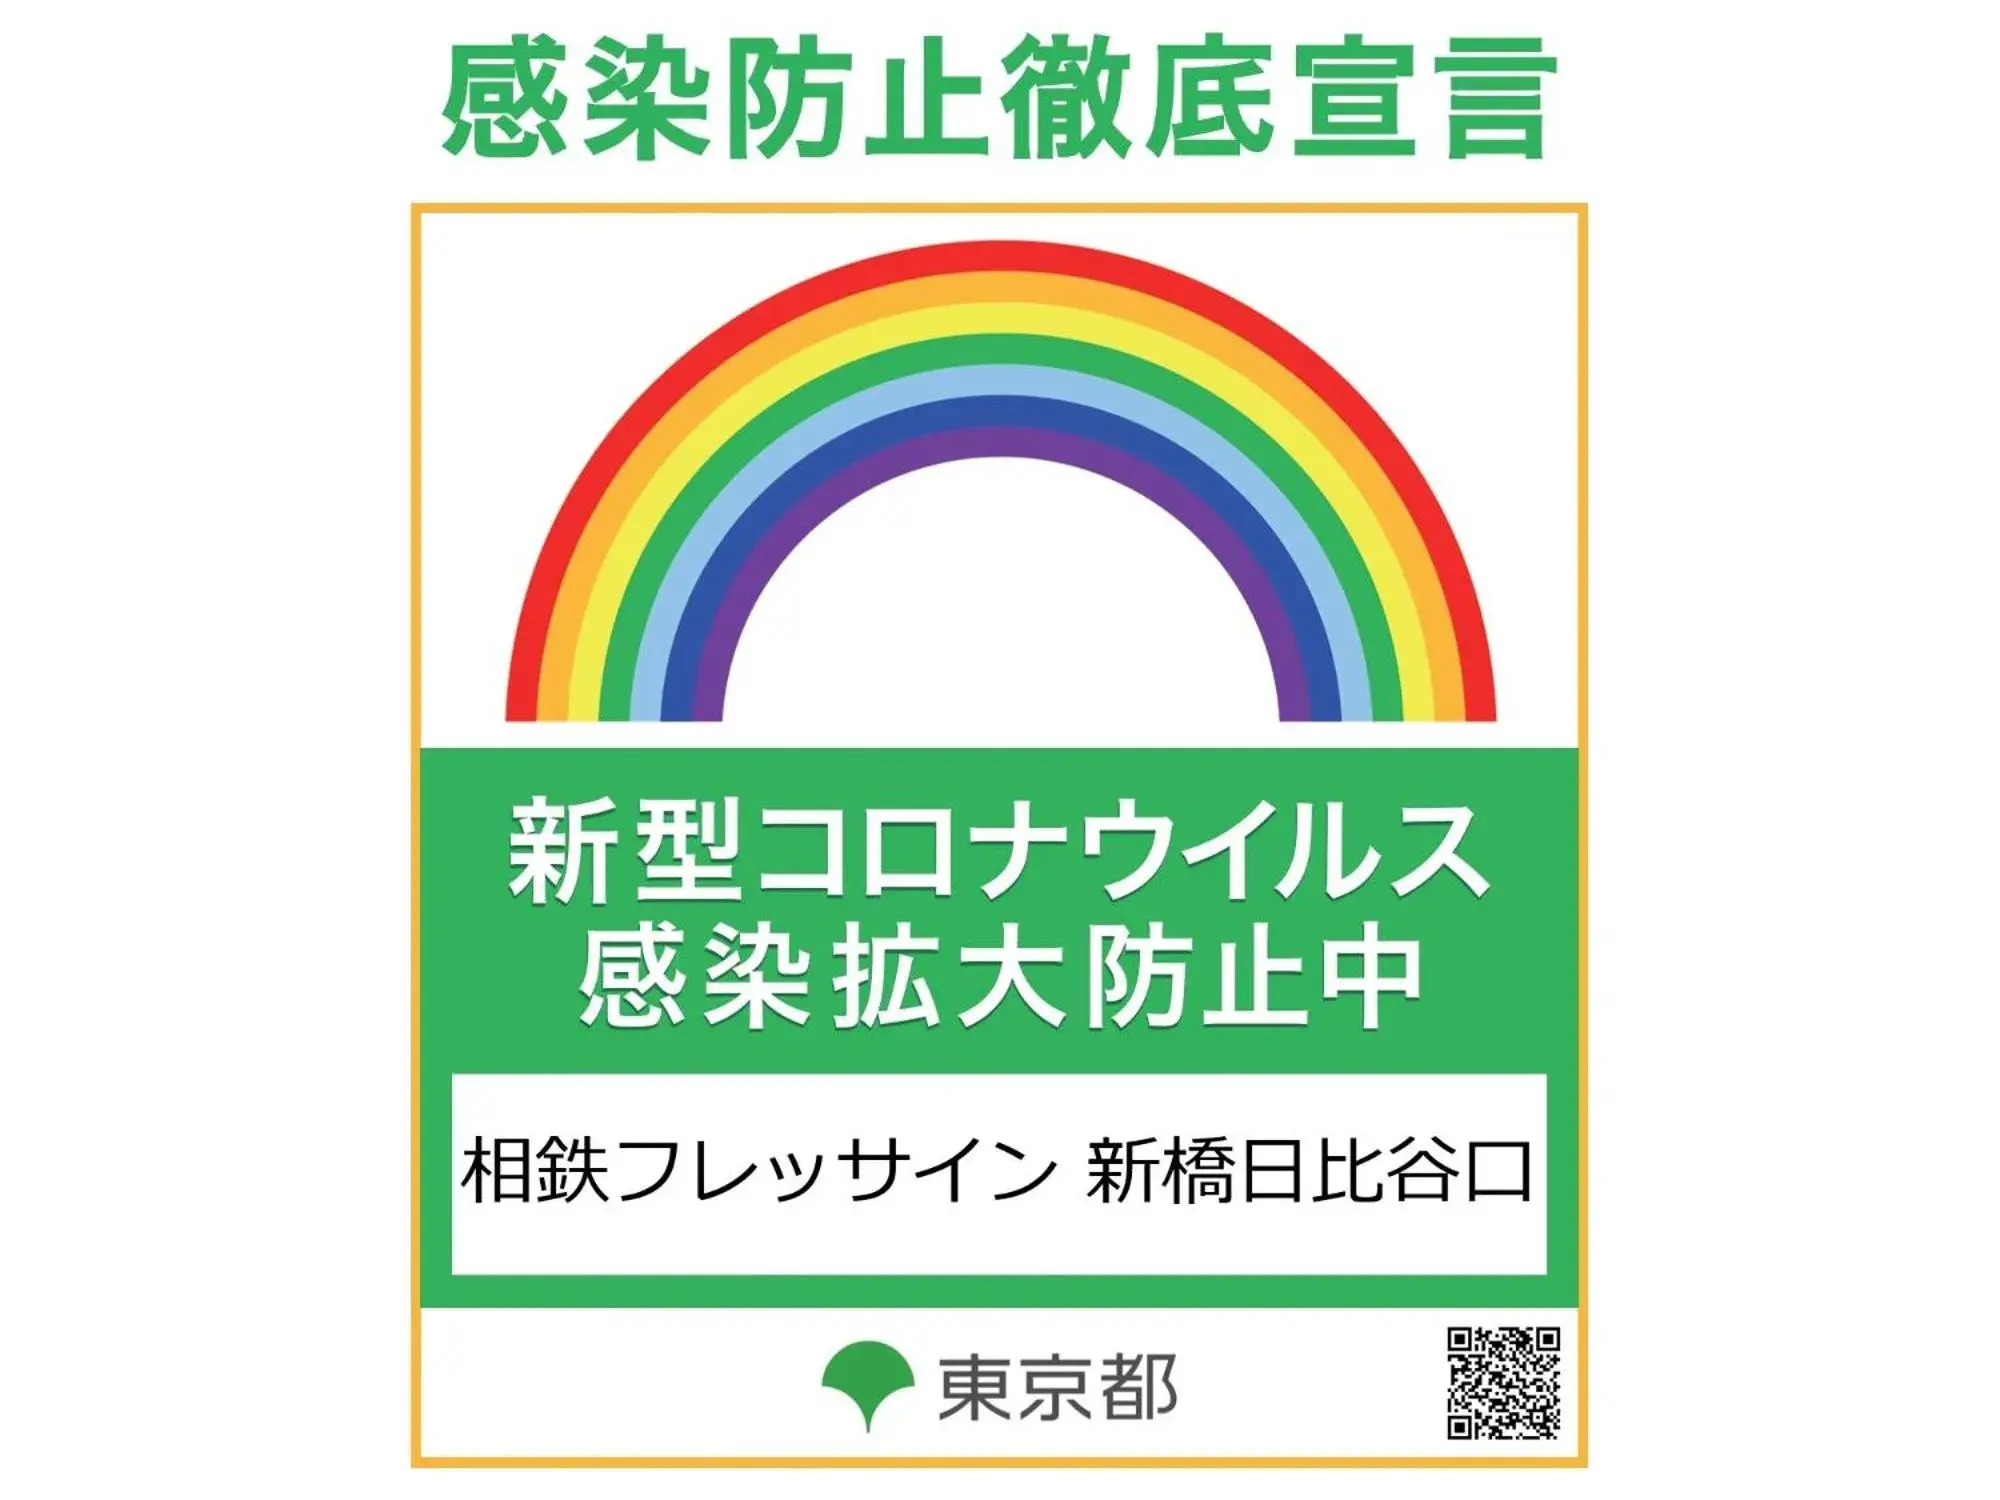 Logo/Certificate/Sign in Sotetsu Fresa Inn Shimbashi Hibiyaguchi